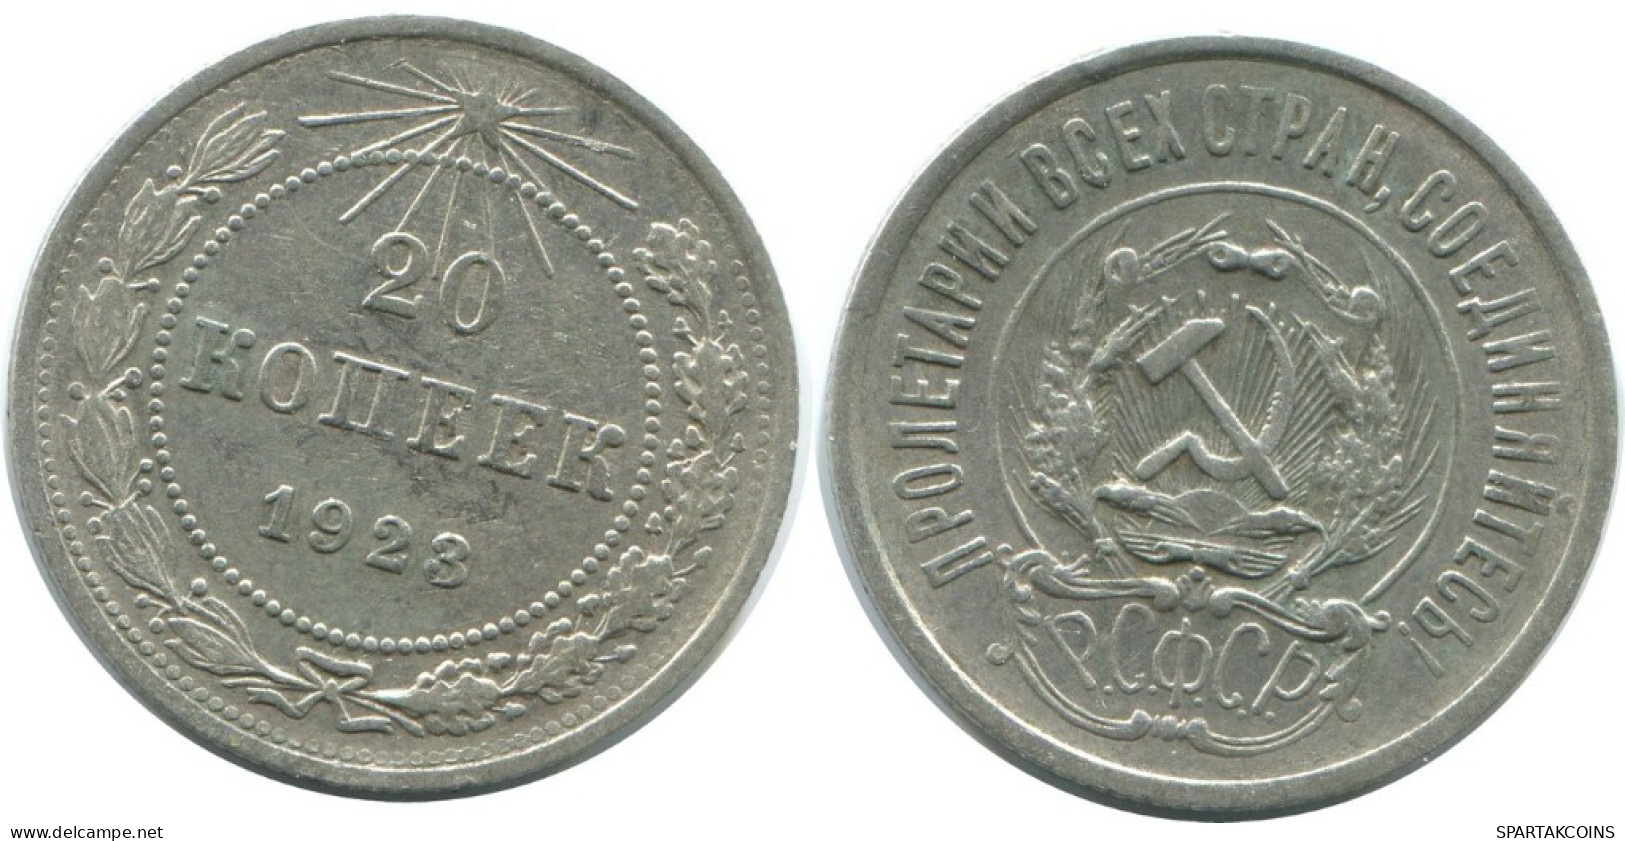 20 KOPEKS 1923 RUSSIA RSFSR SILVER Coin HIGH GRADE #AF513.4.U.A - Russland